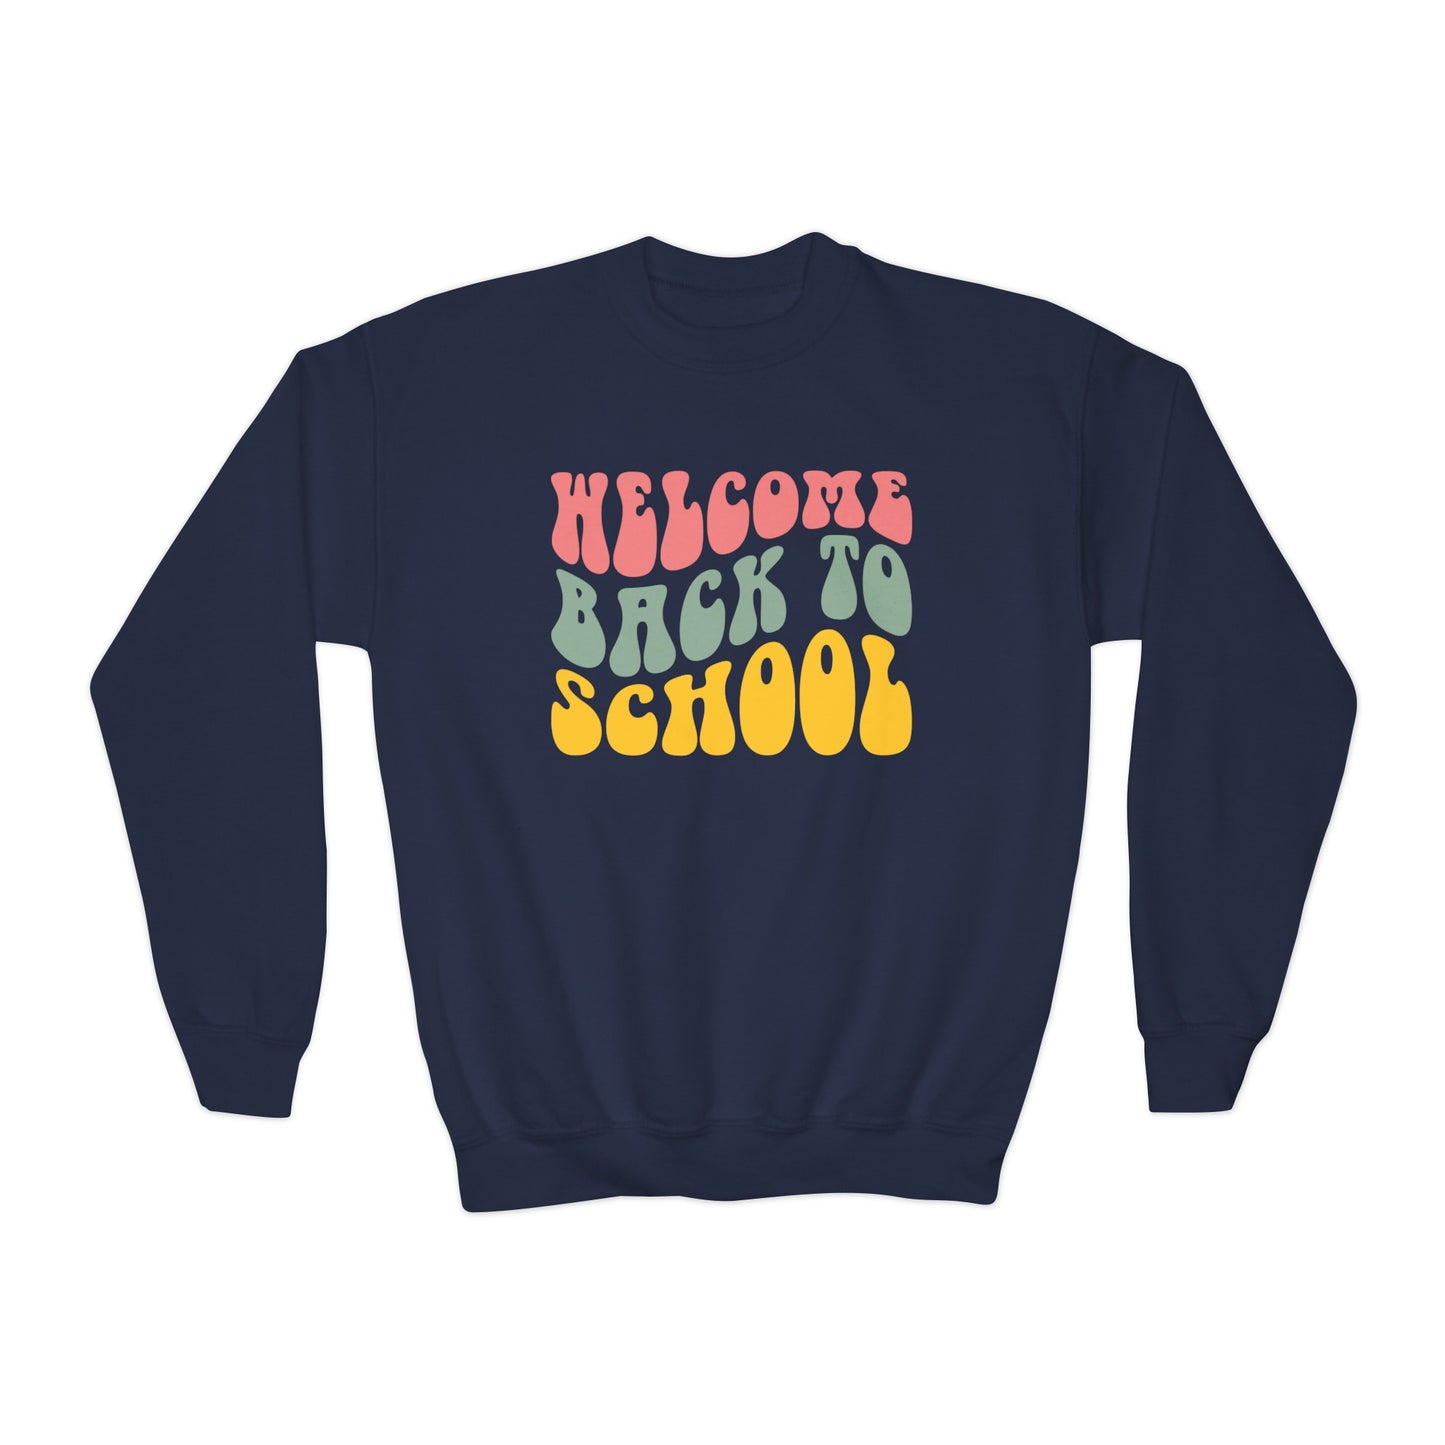 Welcome back to school sweatshirt for children